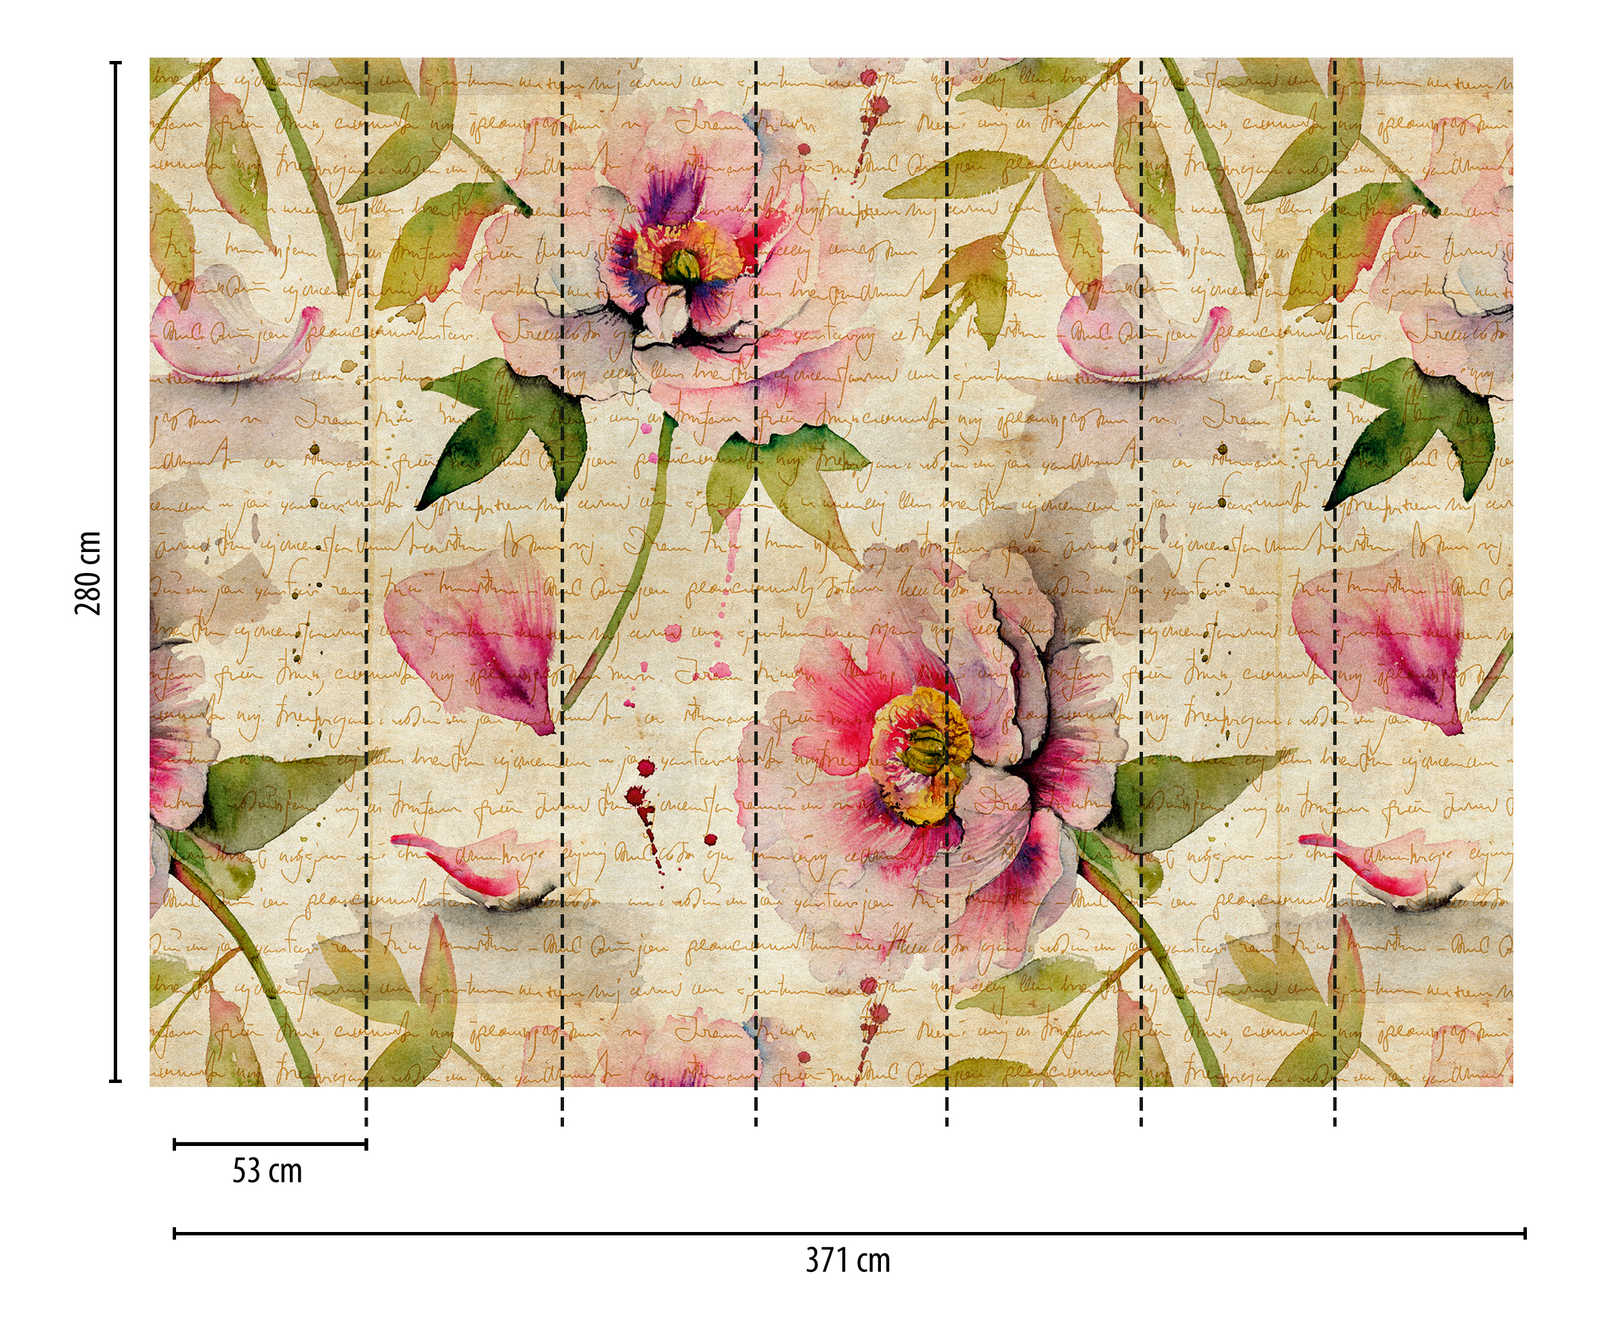             Behang nieuwigheid - rozen motief behang vintage & cottage core stijl
        